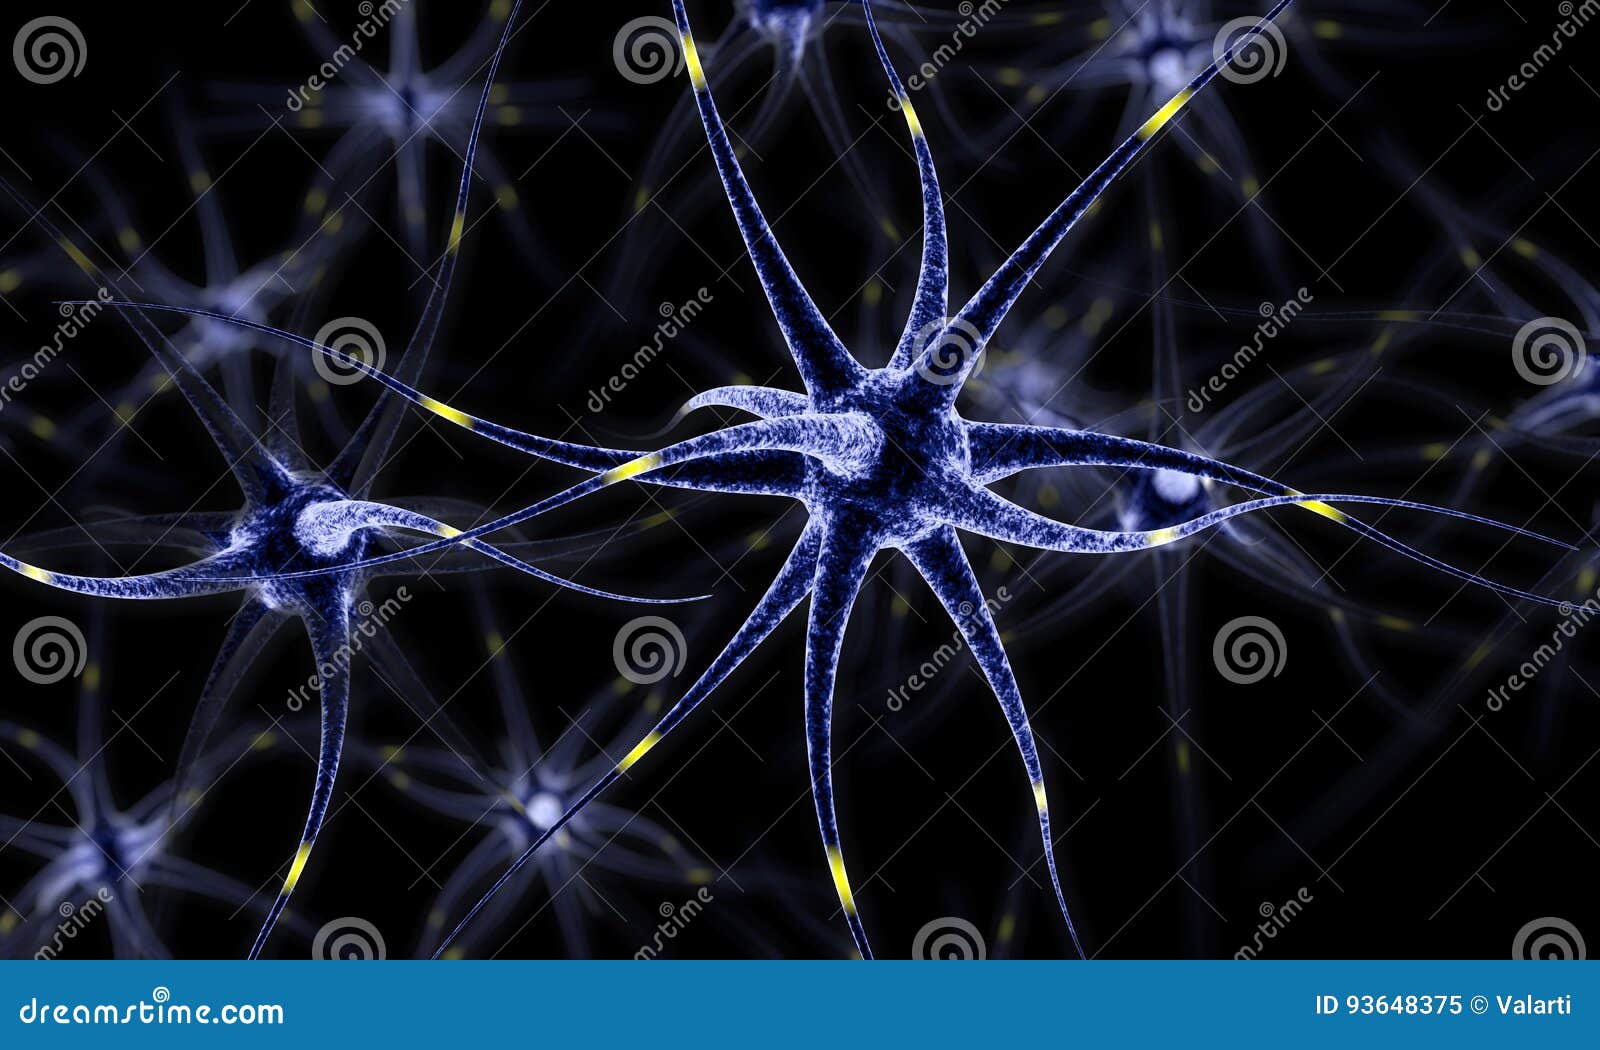 neural network , brain cells , human nervous system , neurons 3d 